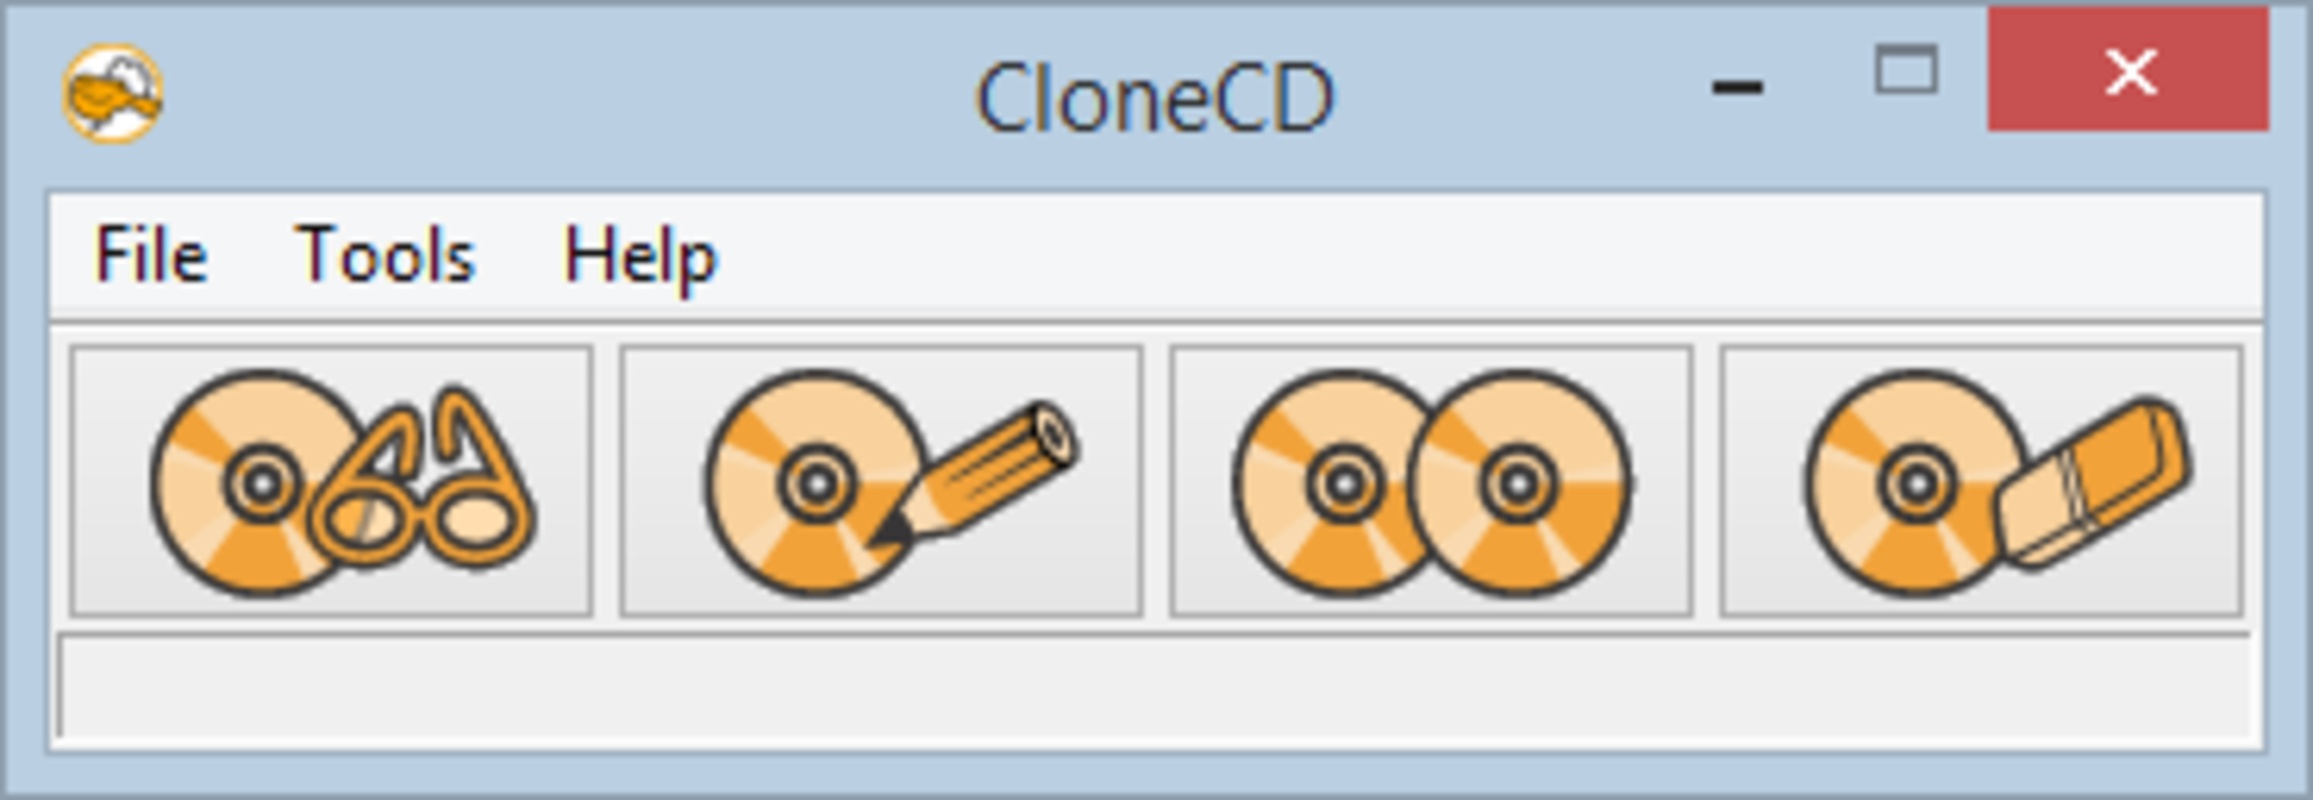 CloneCD 5.3.4.0 for Windows Screenshot 5